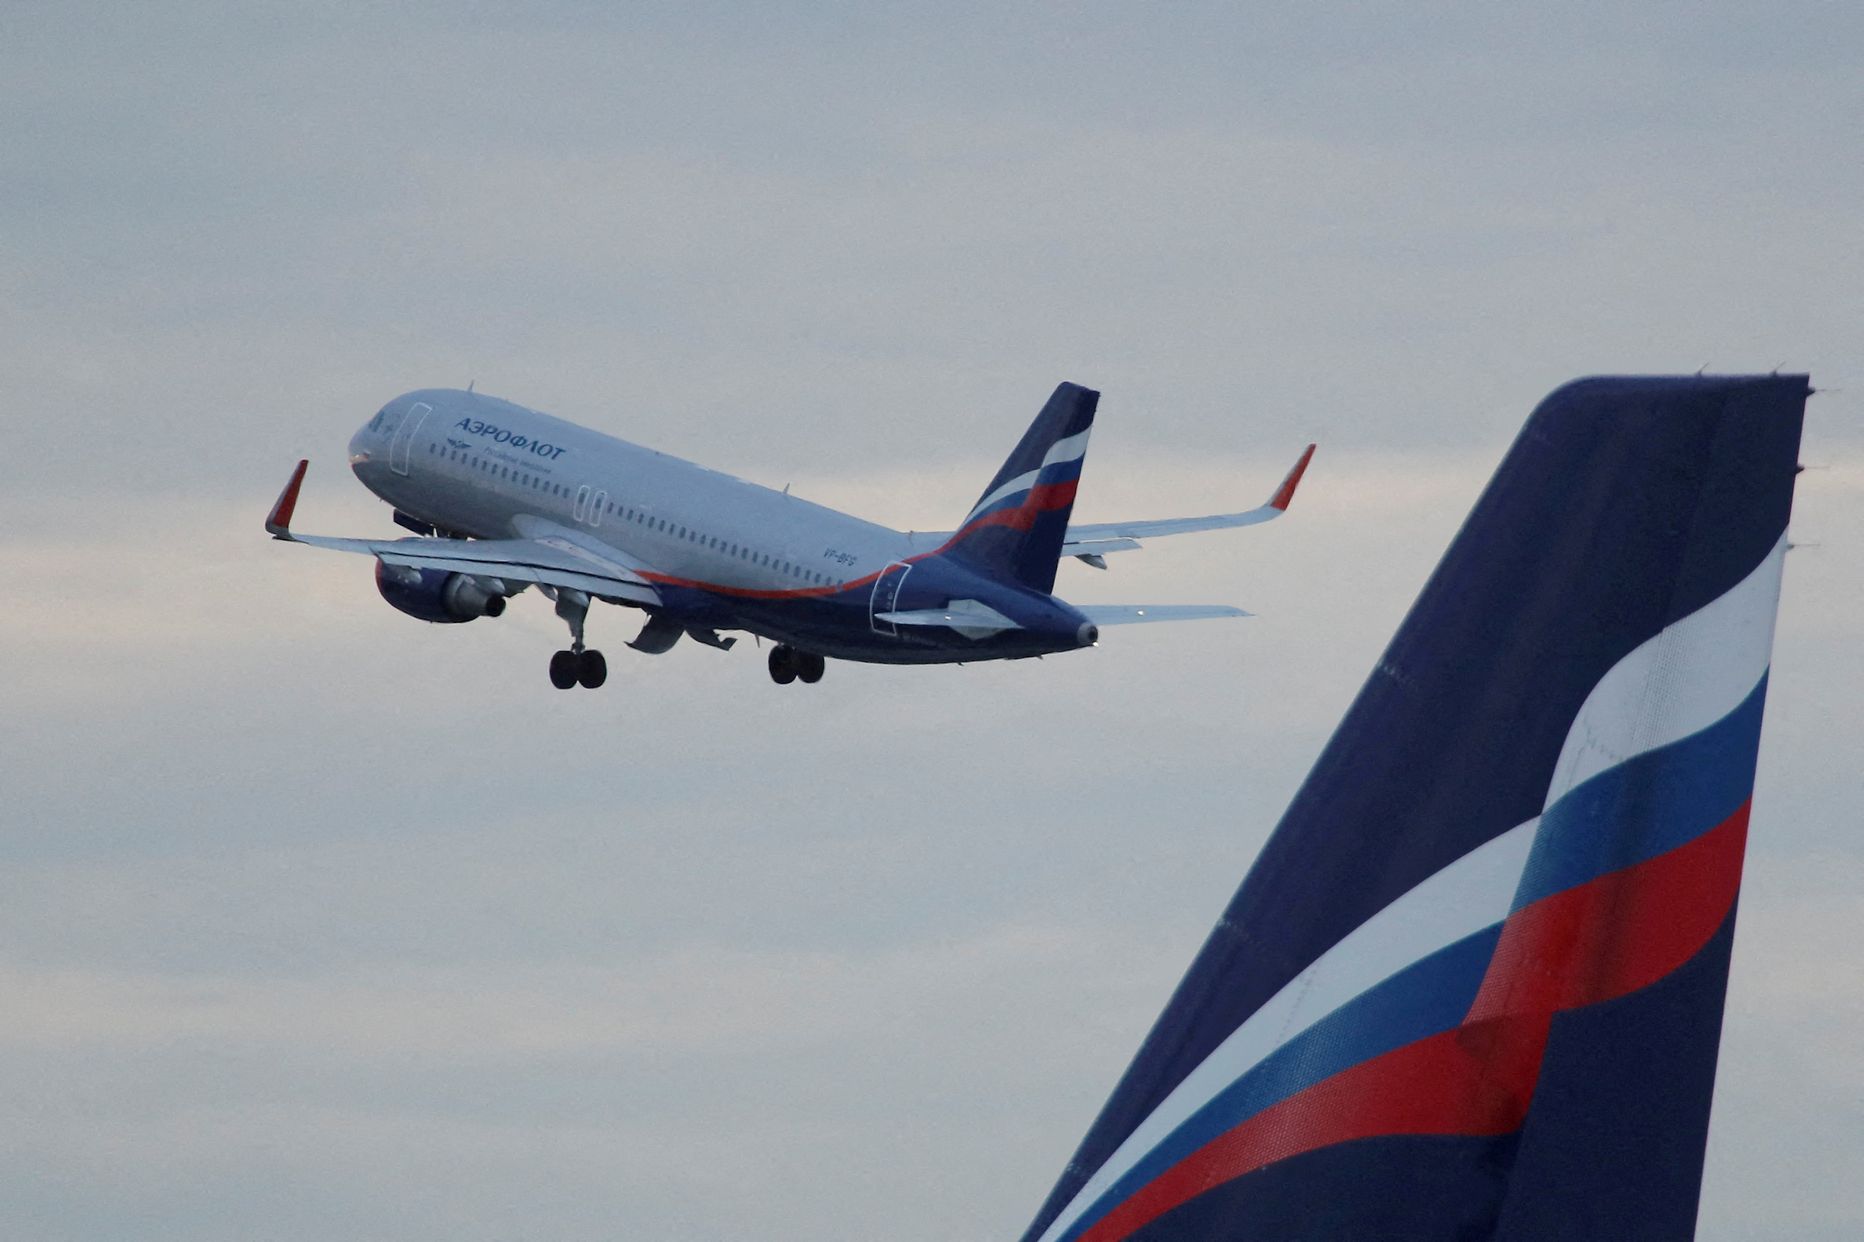 Aerofloti lennuk tõuseb õhku Moskva Šeremetjevo lennujaamast.